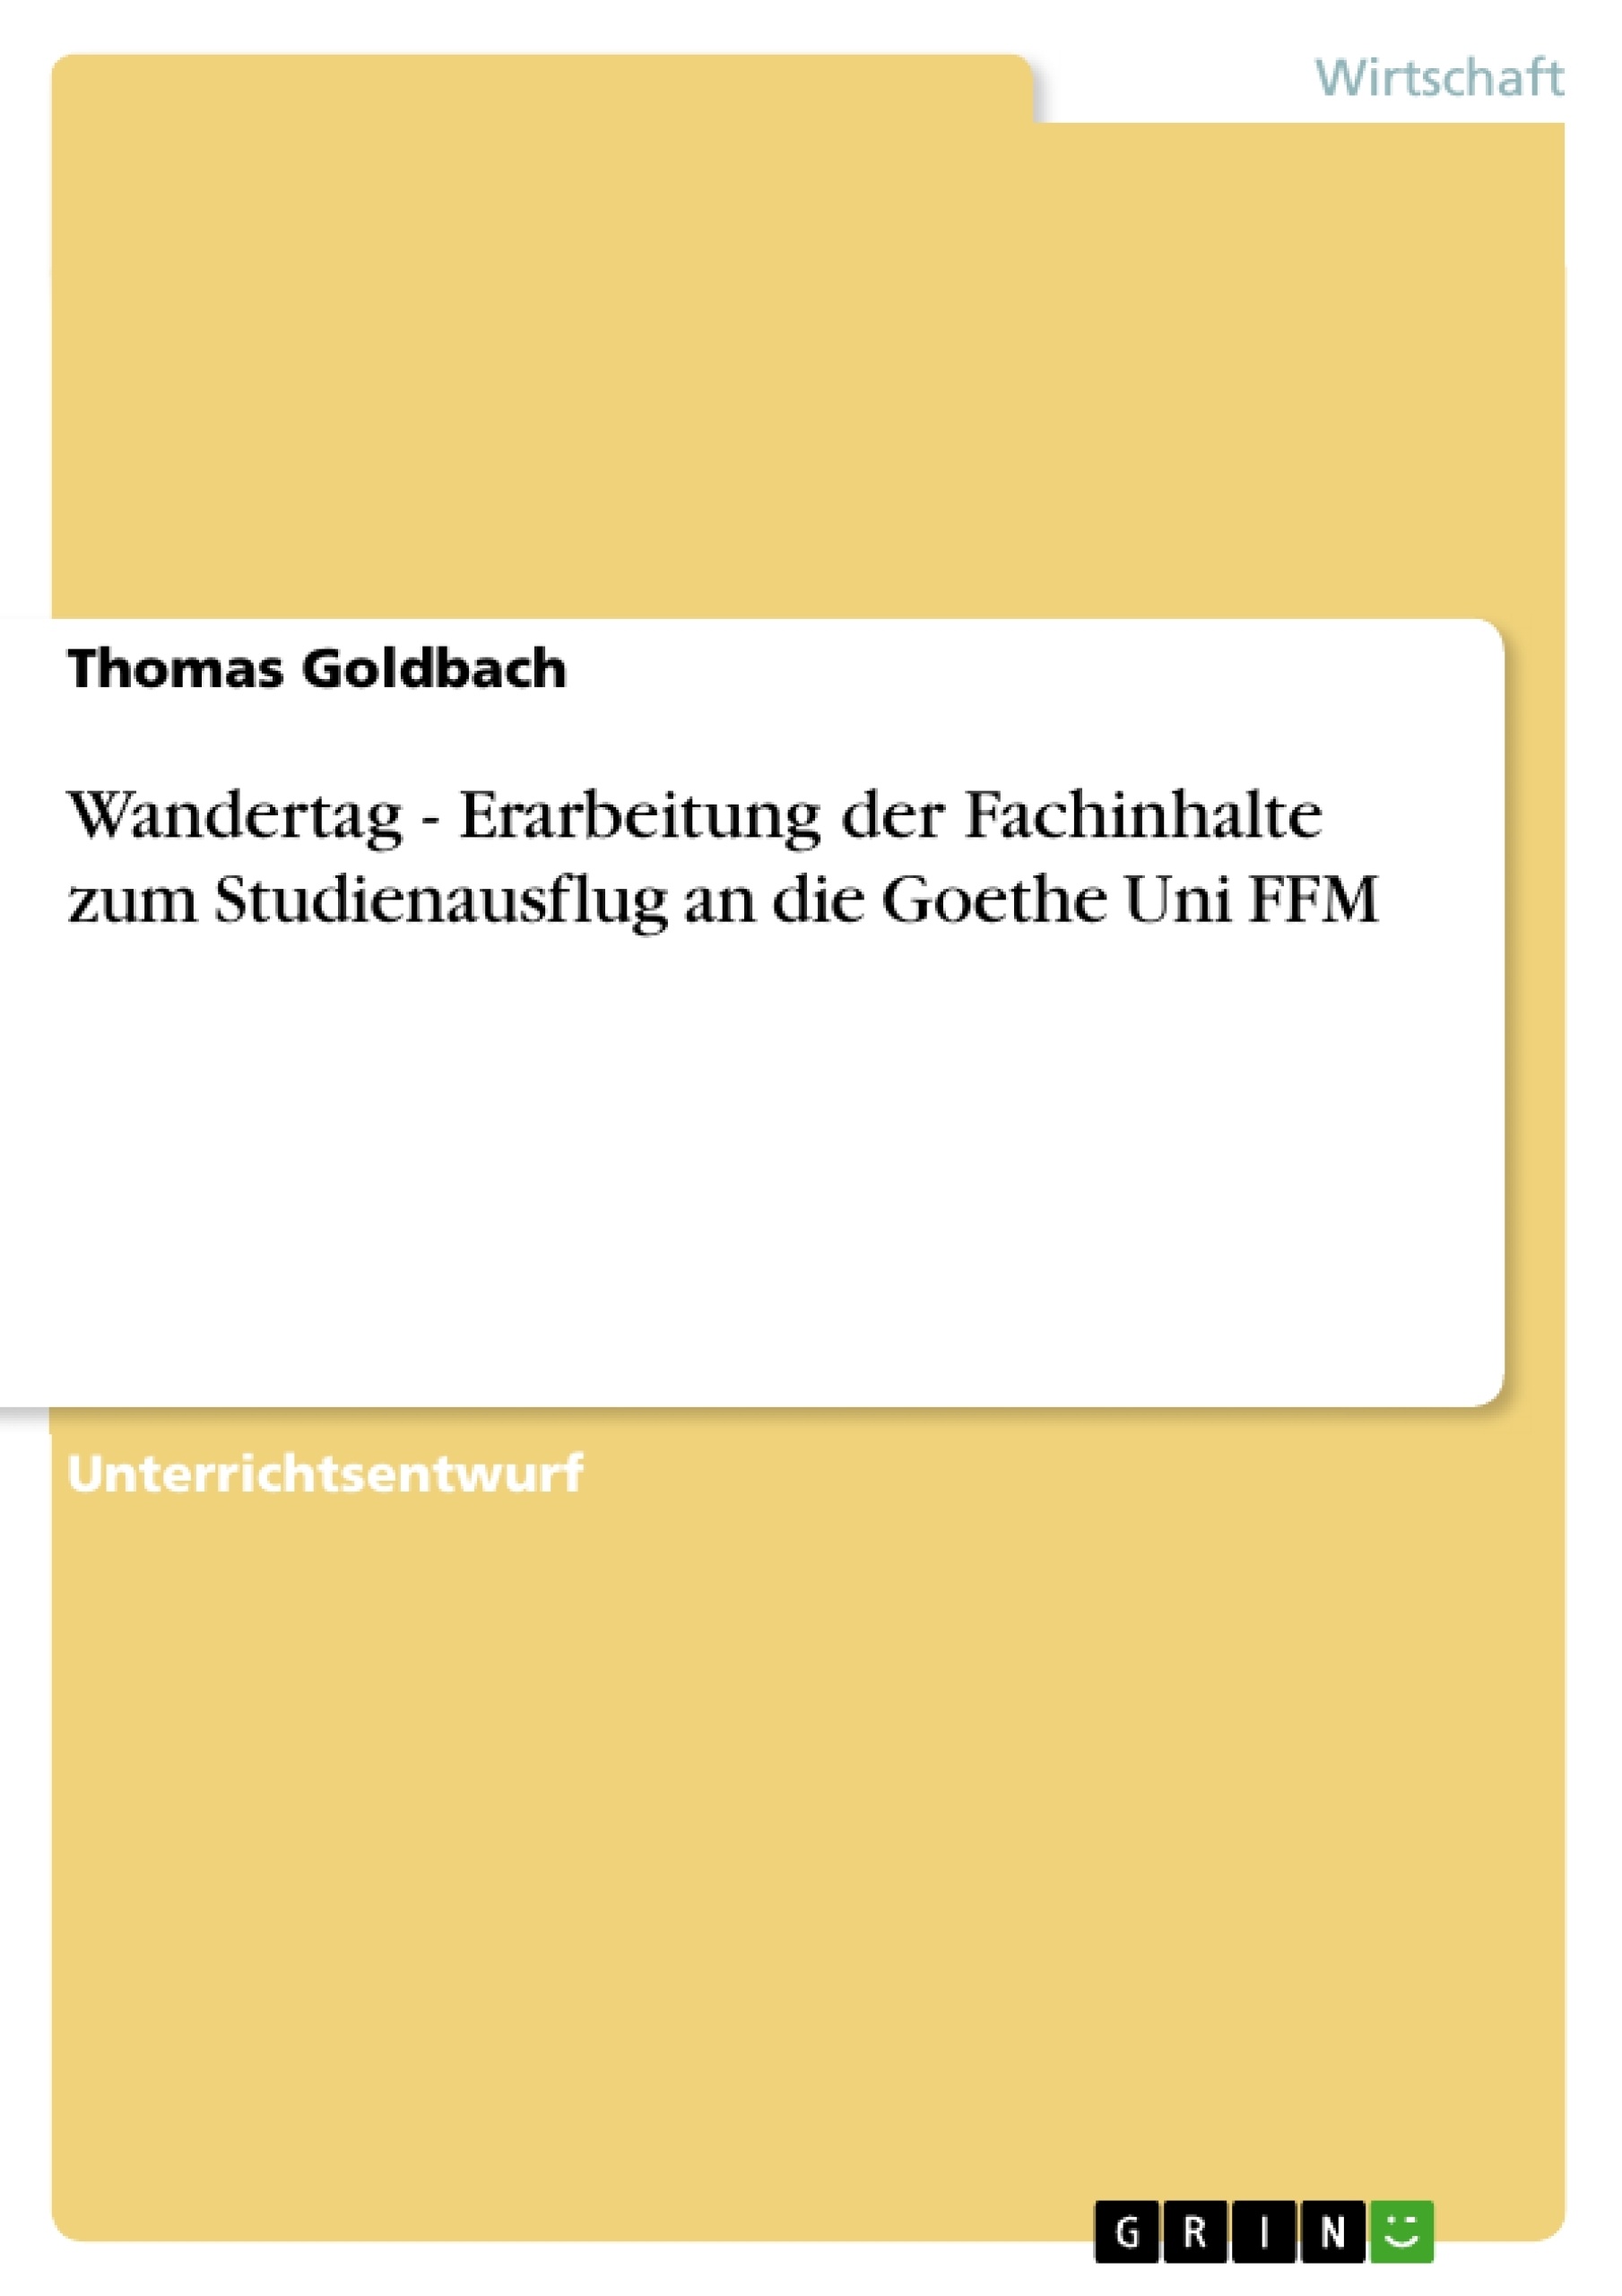 Título: Wandertag - Erarbeitung der Fachinhalte zum Studienausflug an die Goethe Uni FFM